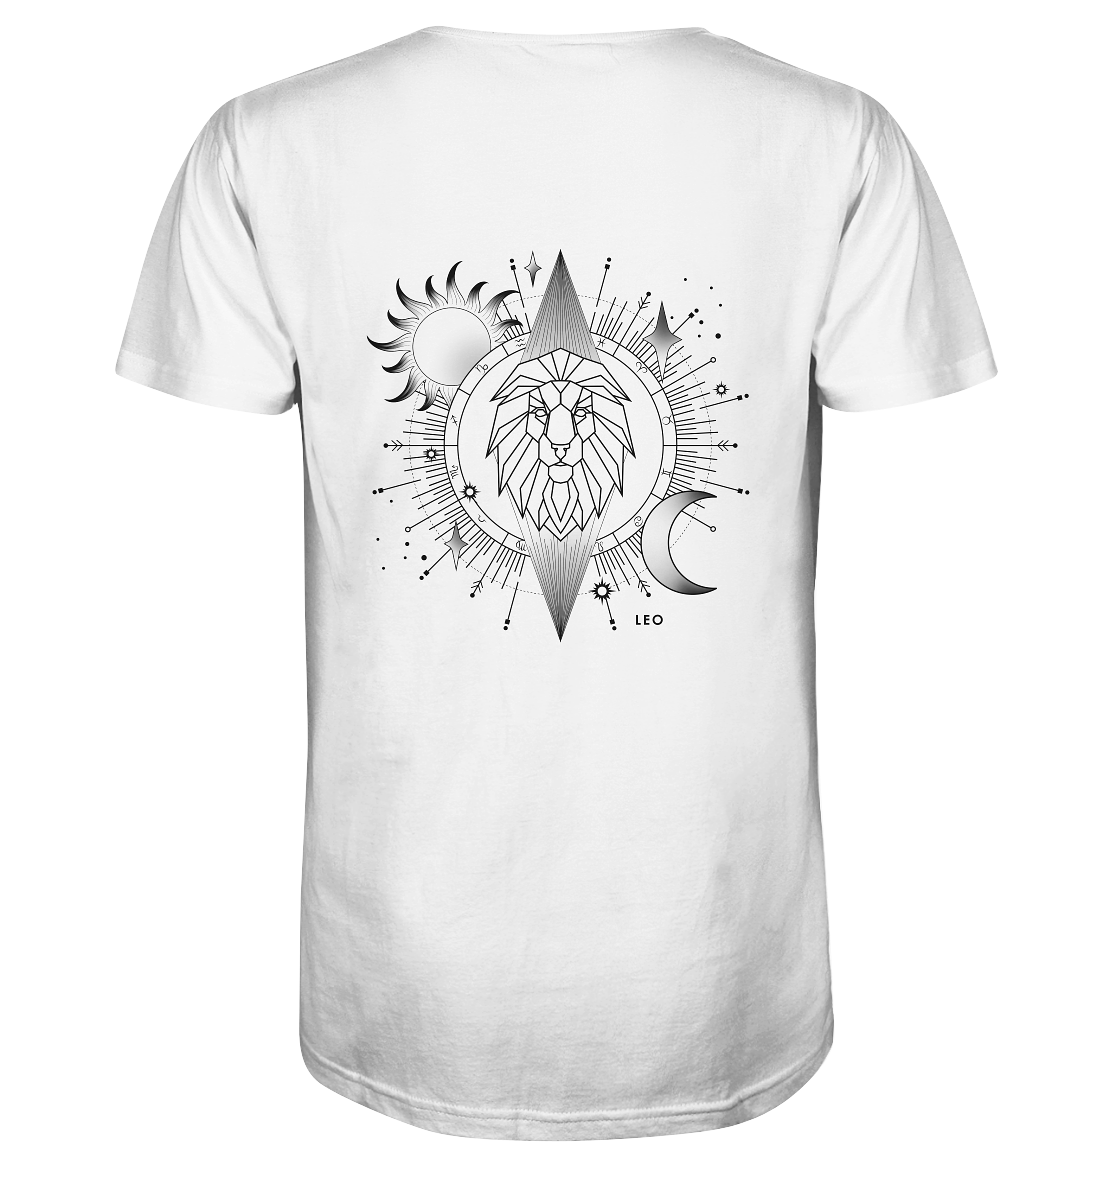 Sternzeichen Löwe Nachhaltigkeit Shirt Bio Baumwolle fair vegan Streetwear Astrologie Sonne Mond Sterne T-Shirt